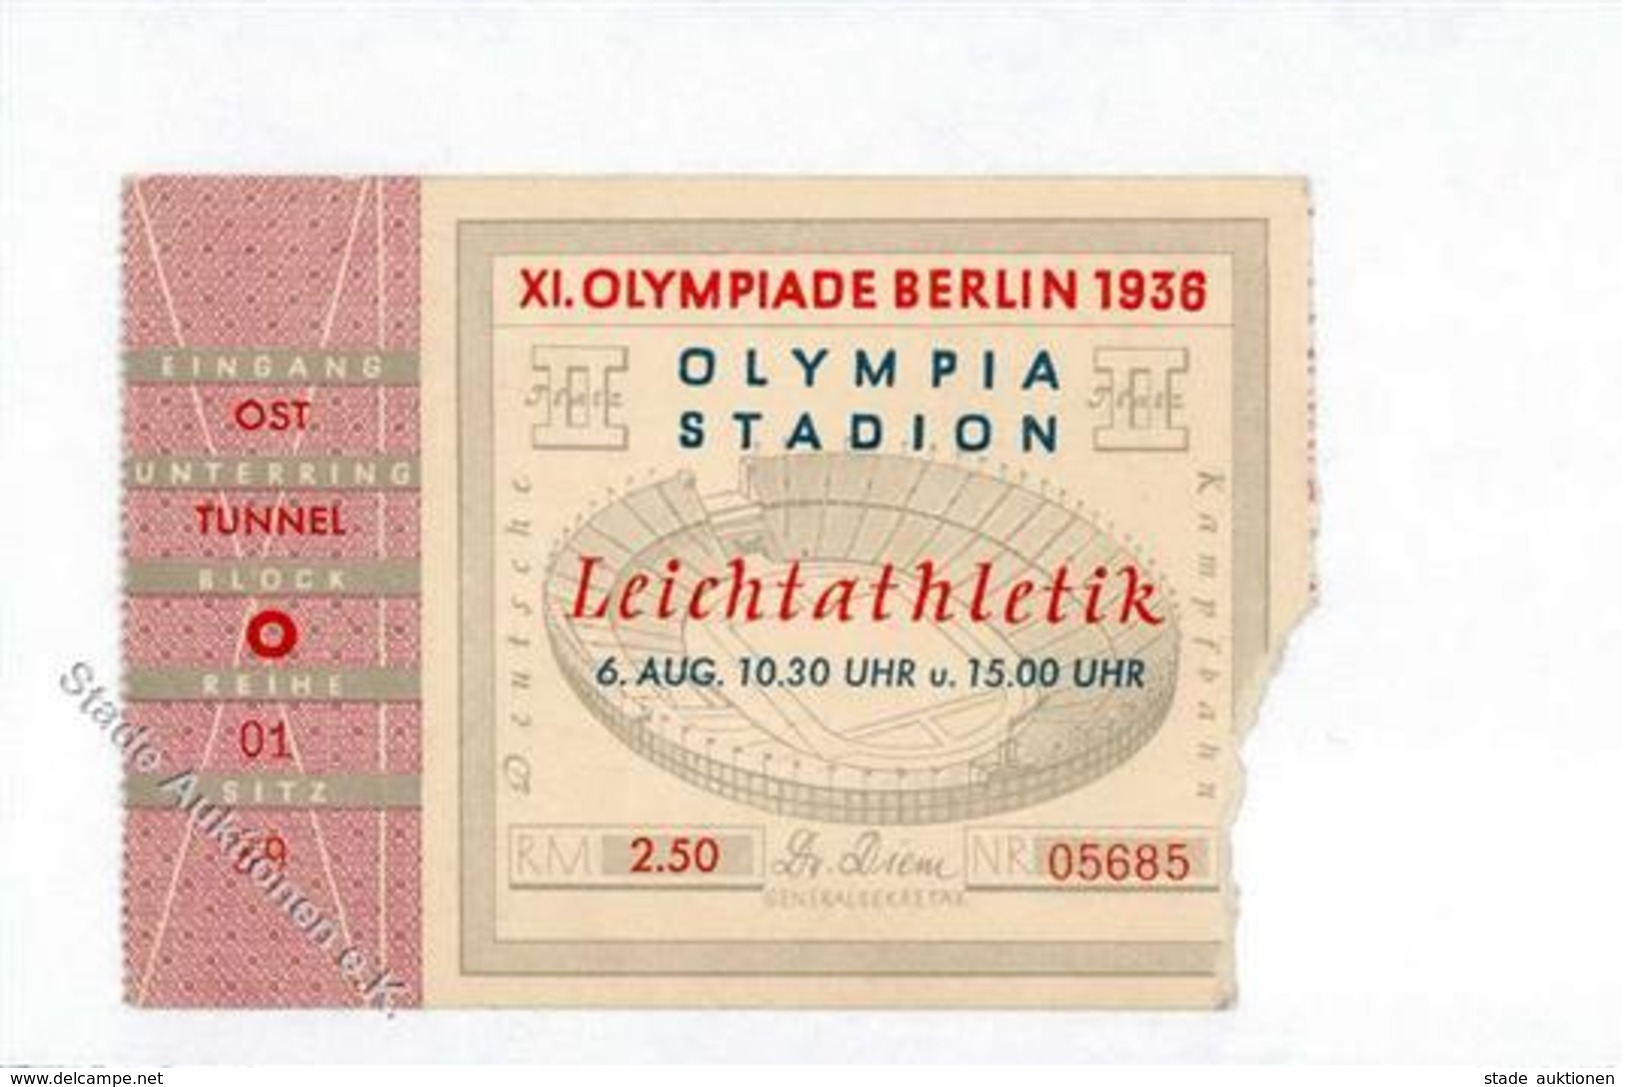 Olympiade 1936 Berlin Mitte (1000) Eintrittskarte Leichtathletik I-II - Olympic Games